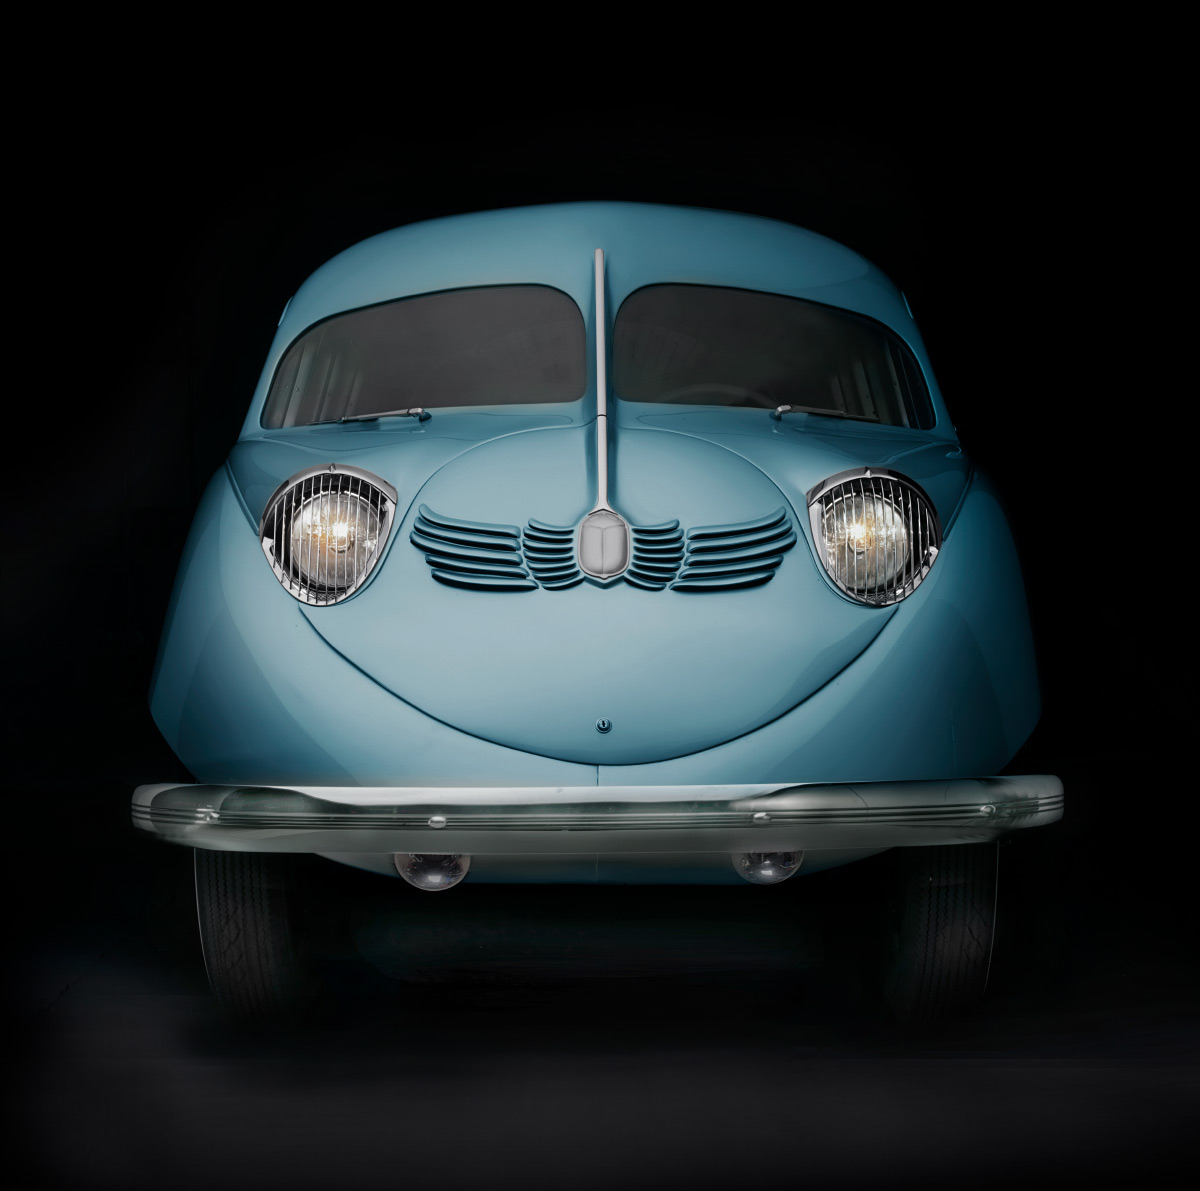 Blue classic Scarab car